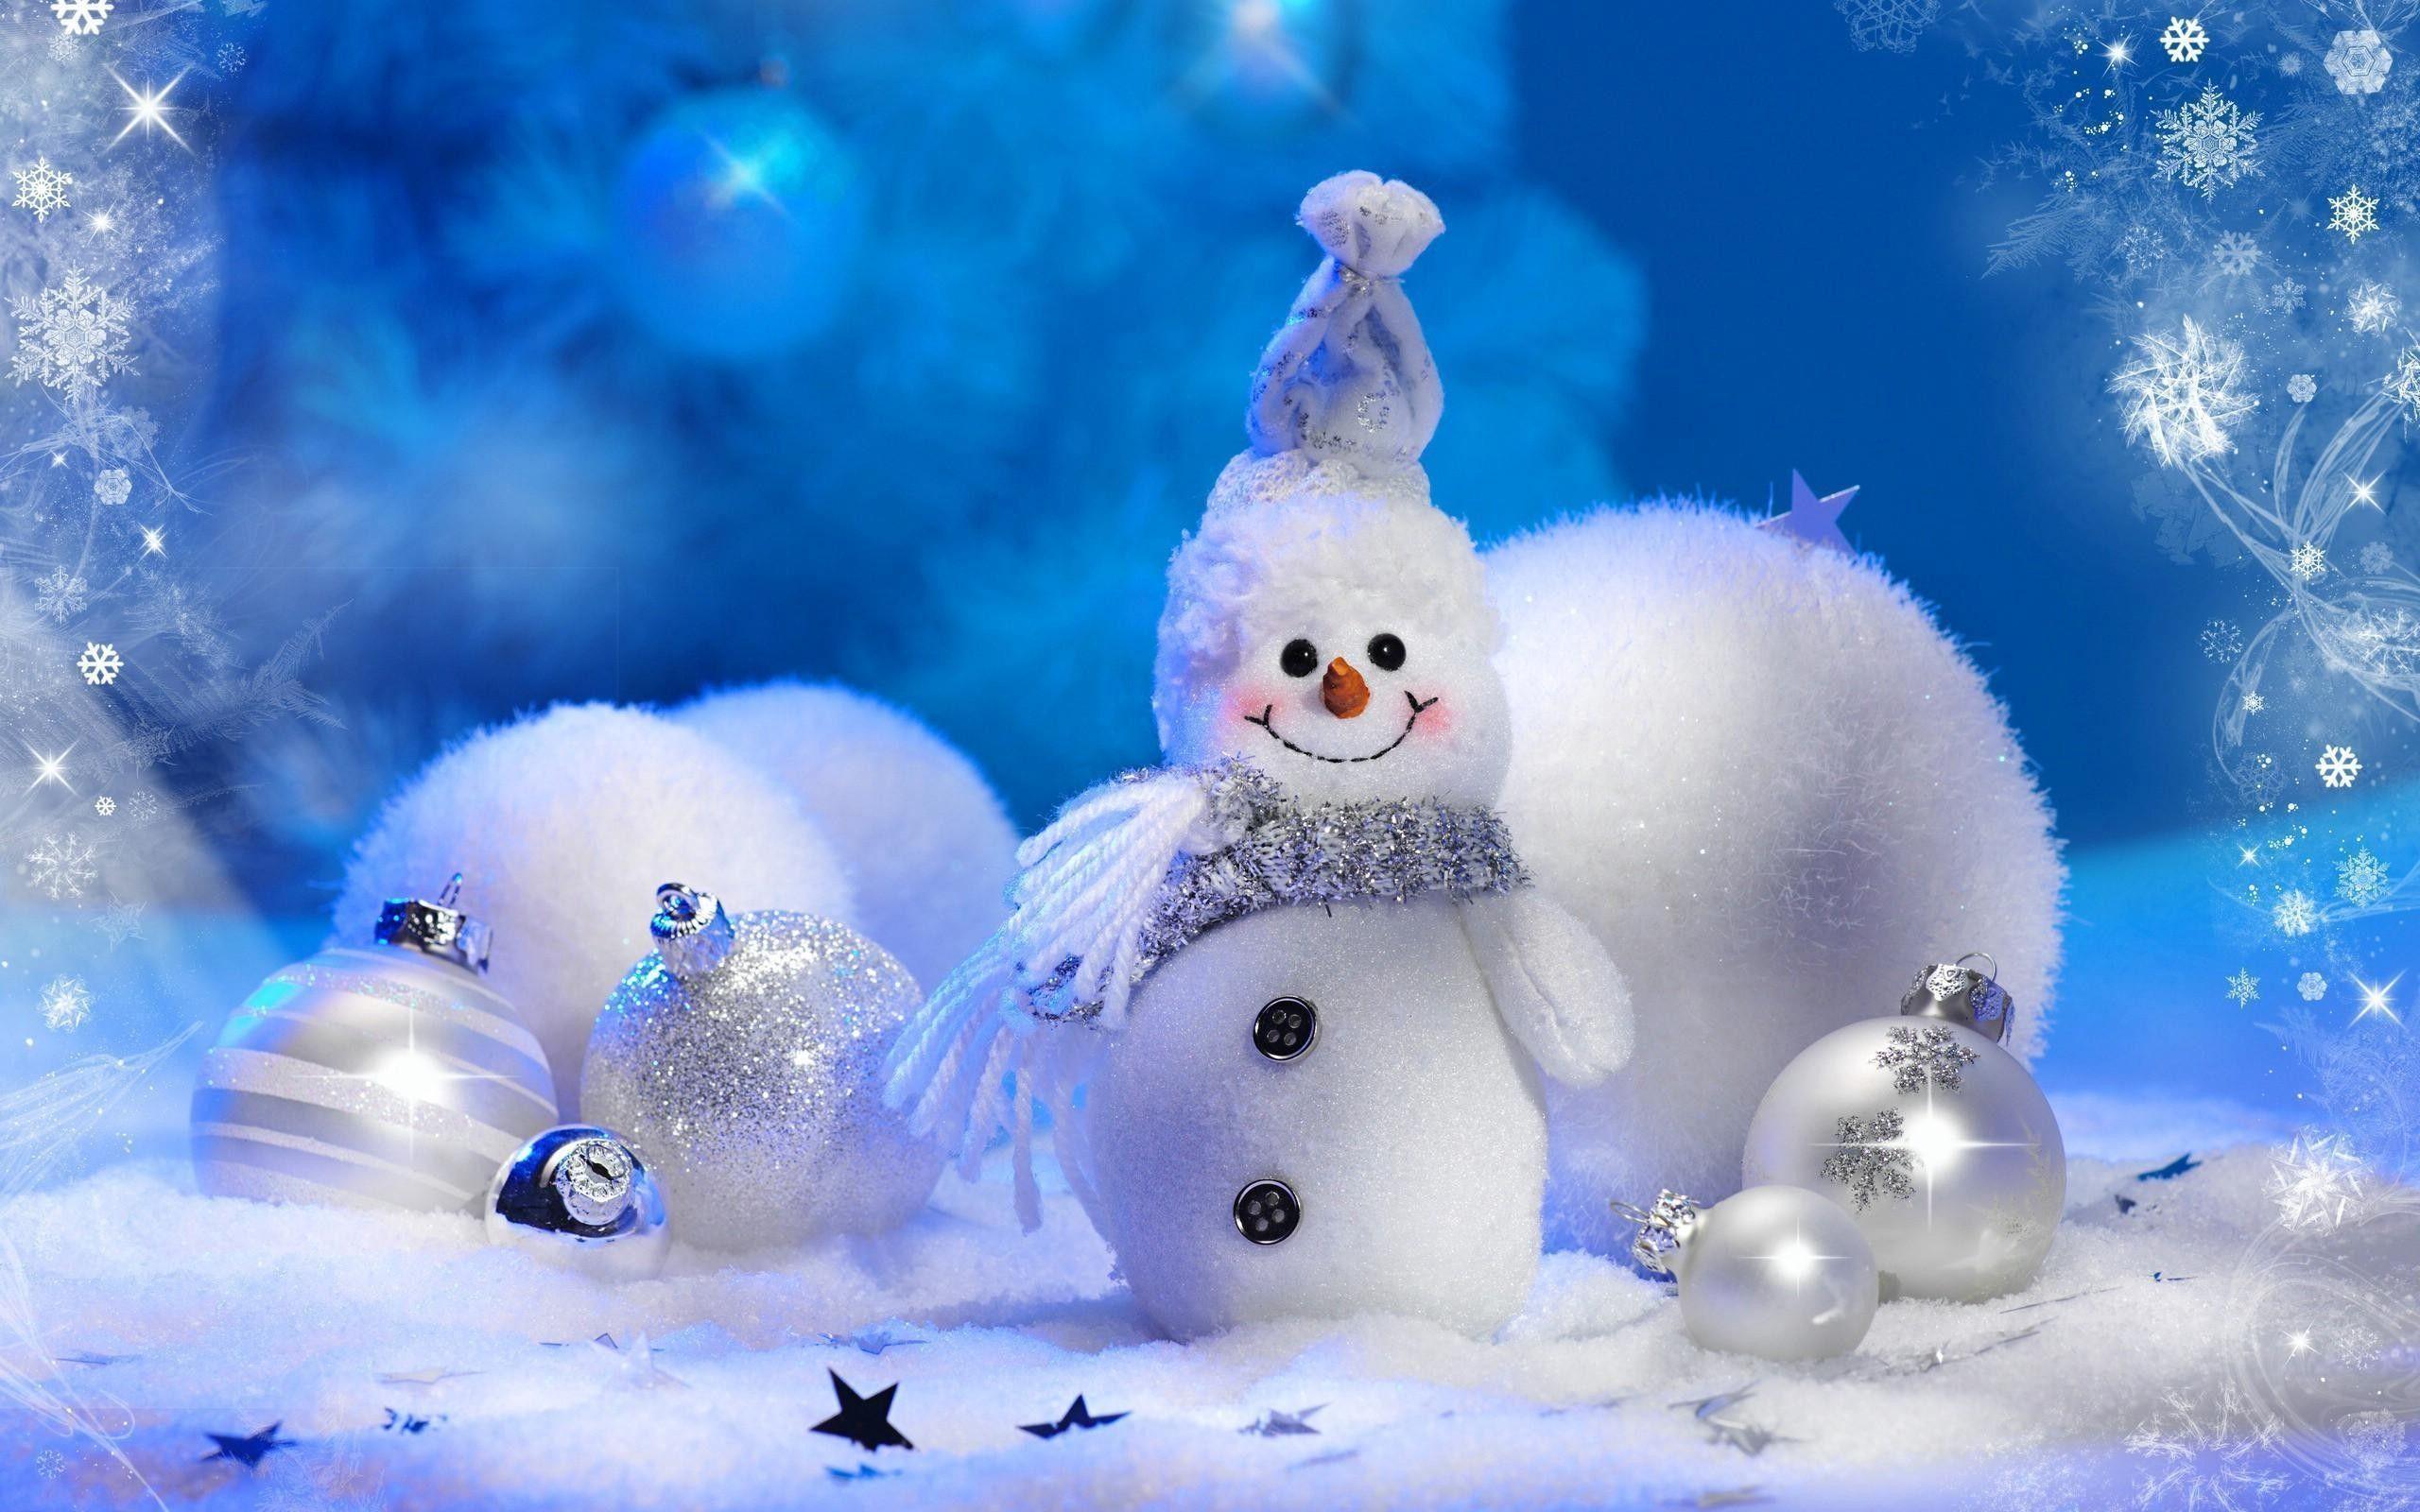 Christmas Winter Scenes Desktop Wallpaper 1280x1024 (322.13 KB)